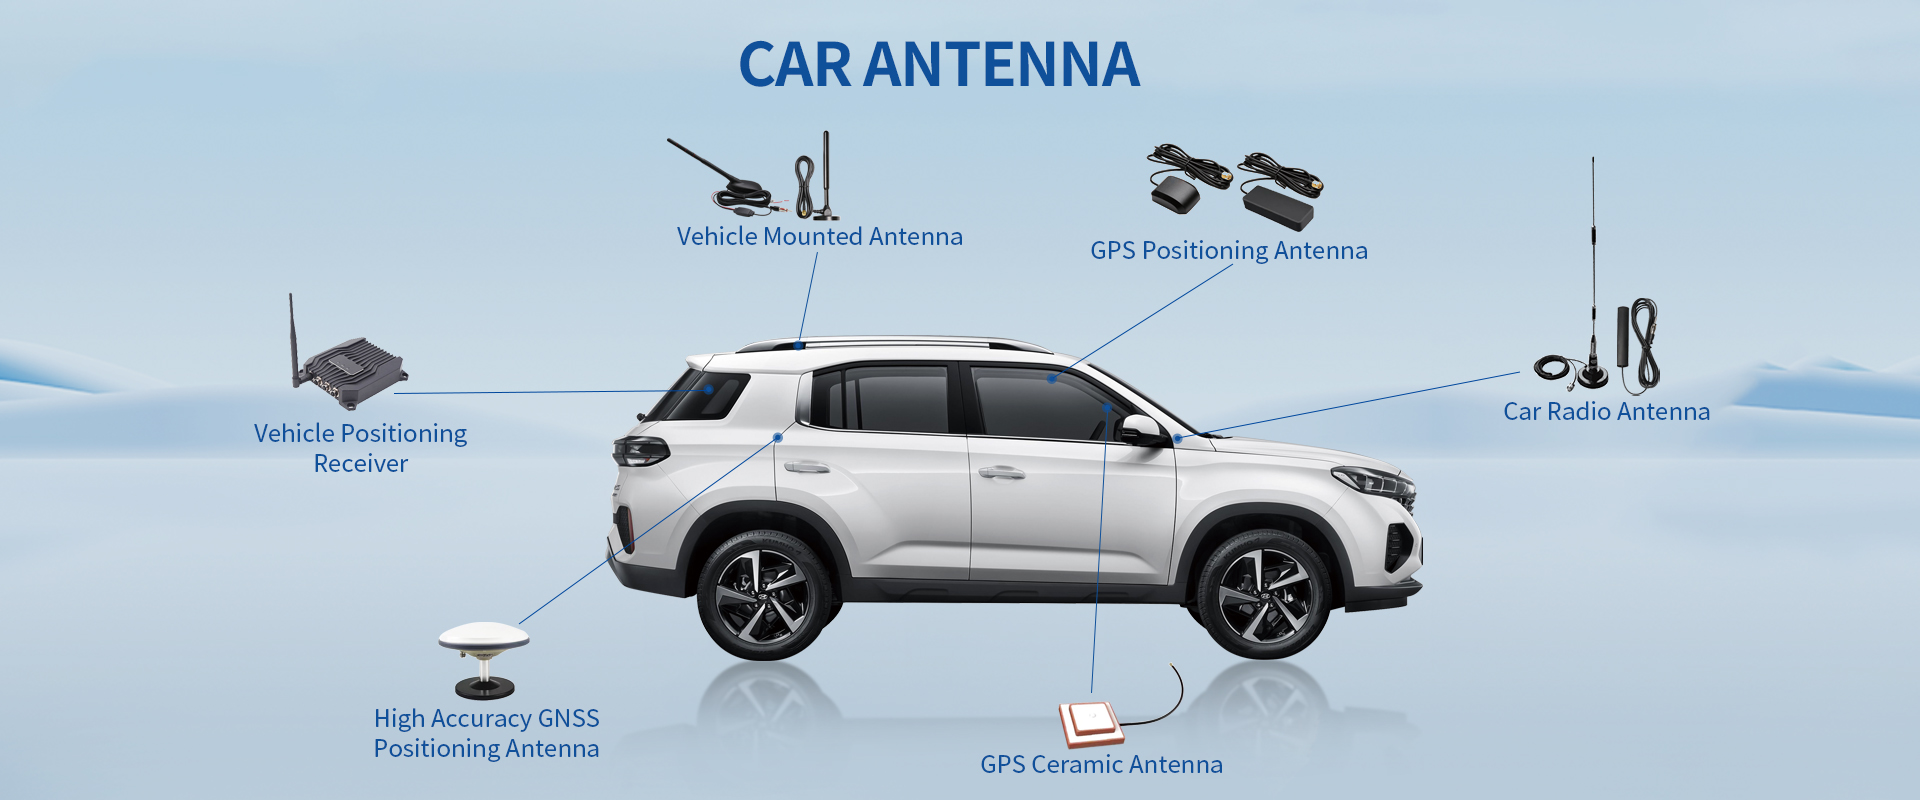 Car Antenna